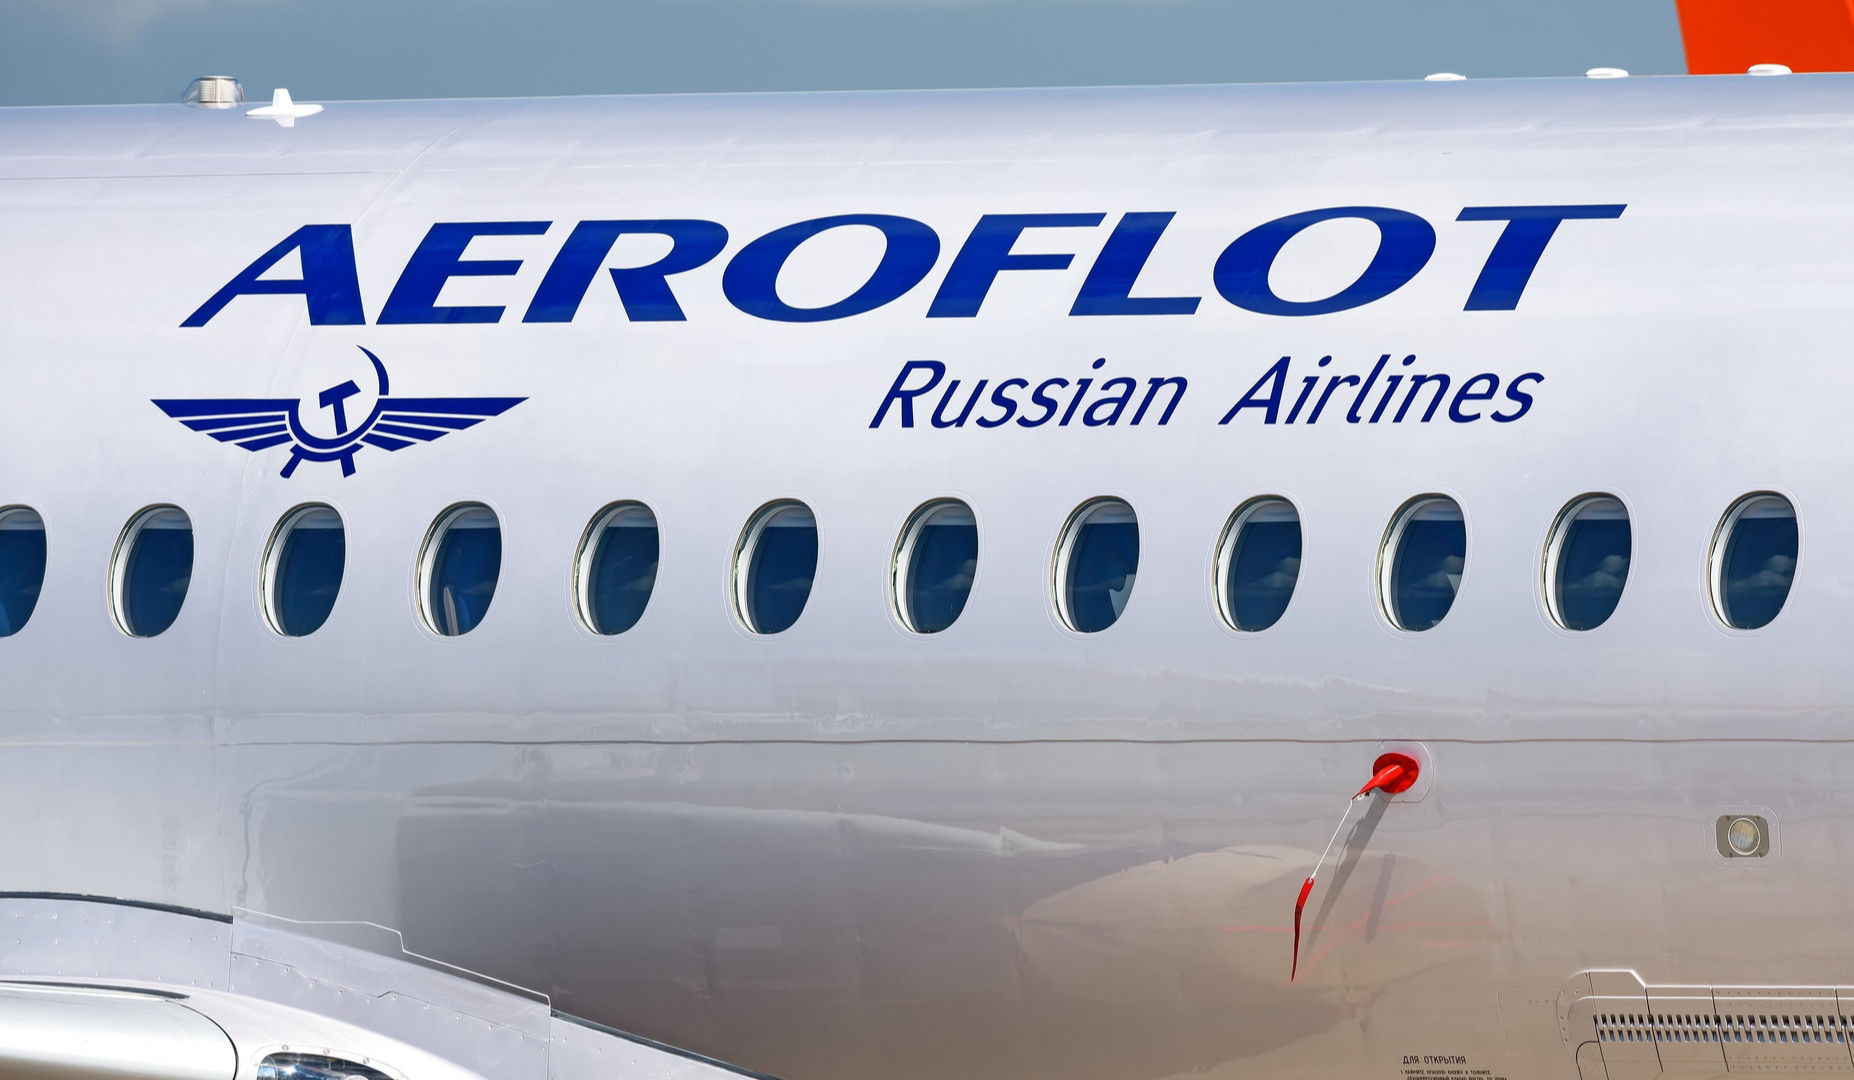 Եվրամիության երկրները կփակեն օդային տարածքը ռուսական ինքնաթիռների համար. ԶԼՄ